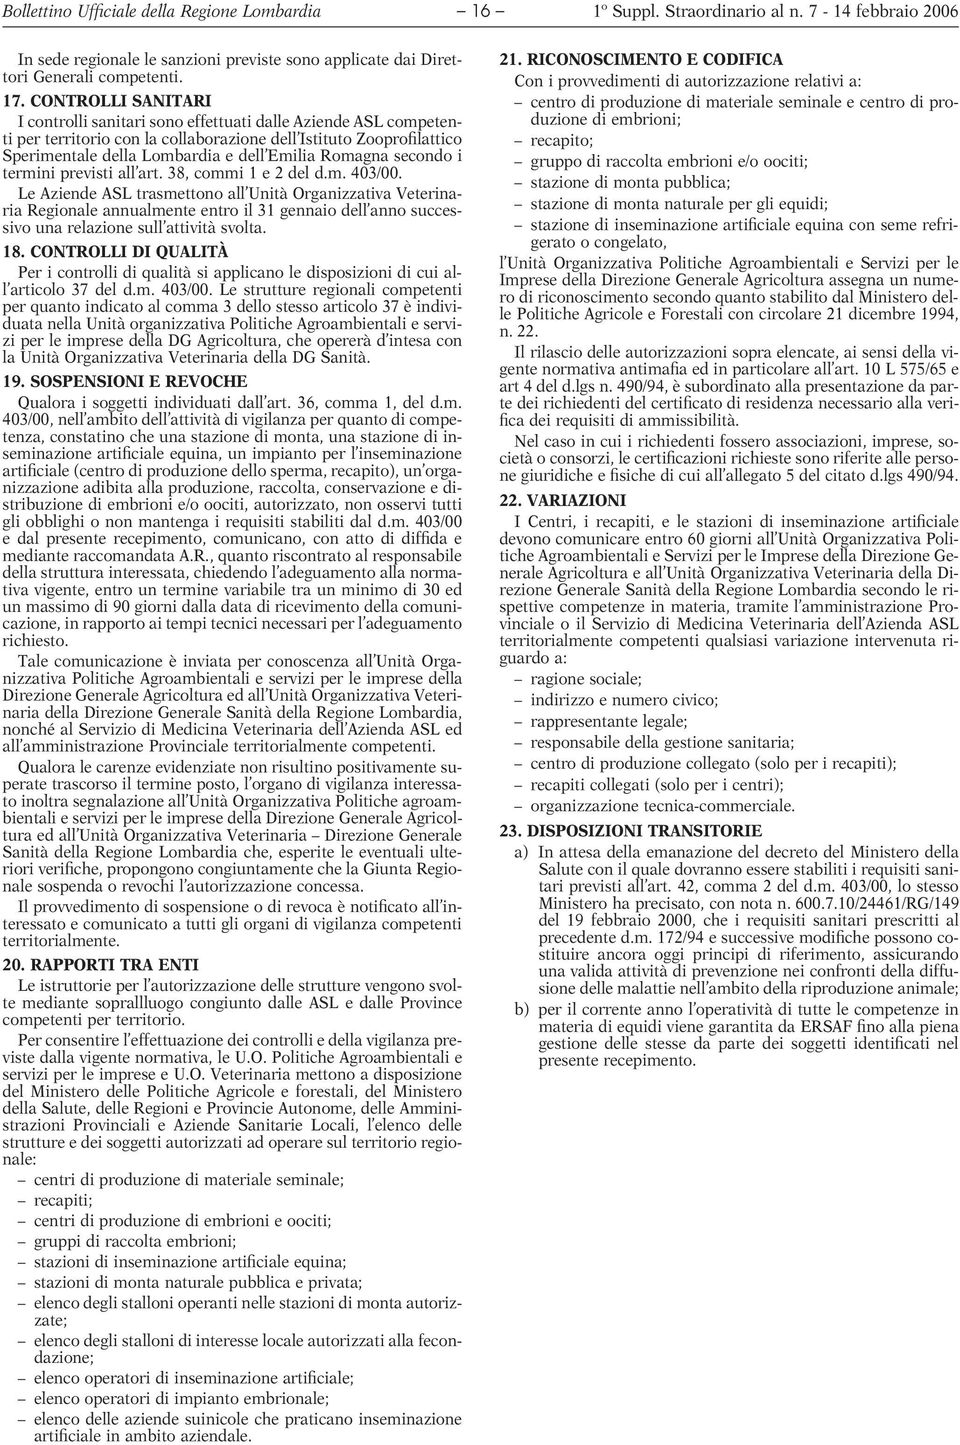 Romagna secondo i termini previsti all art. 38, commi 1e2deld.m. 403/00.